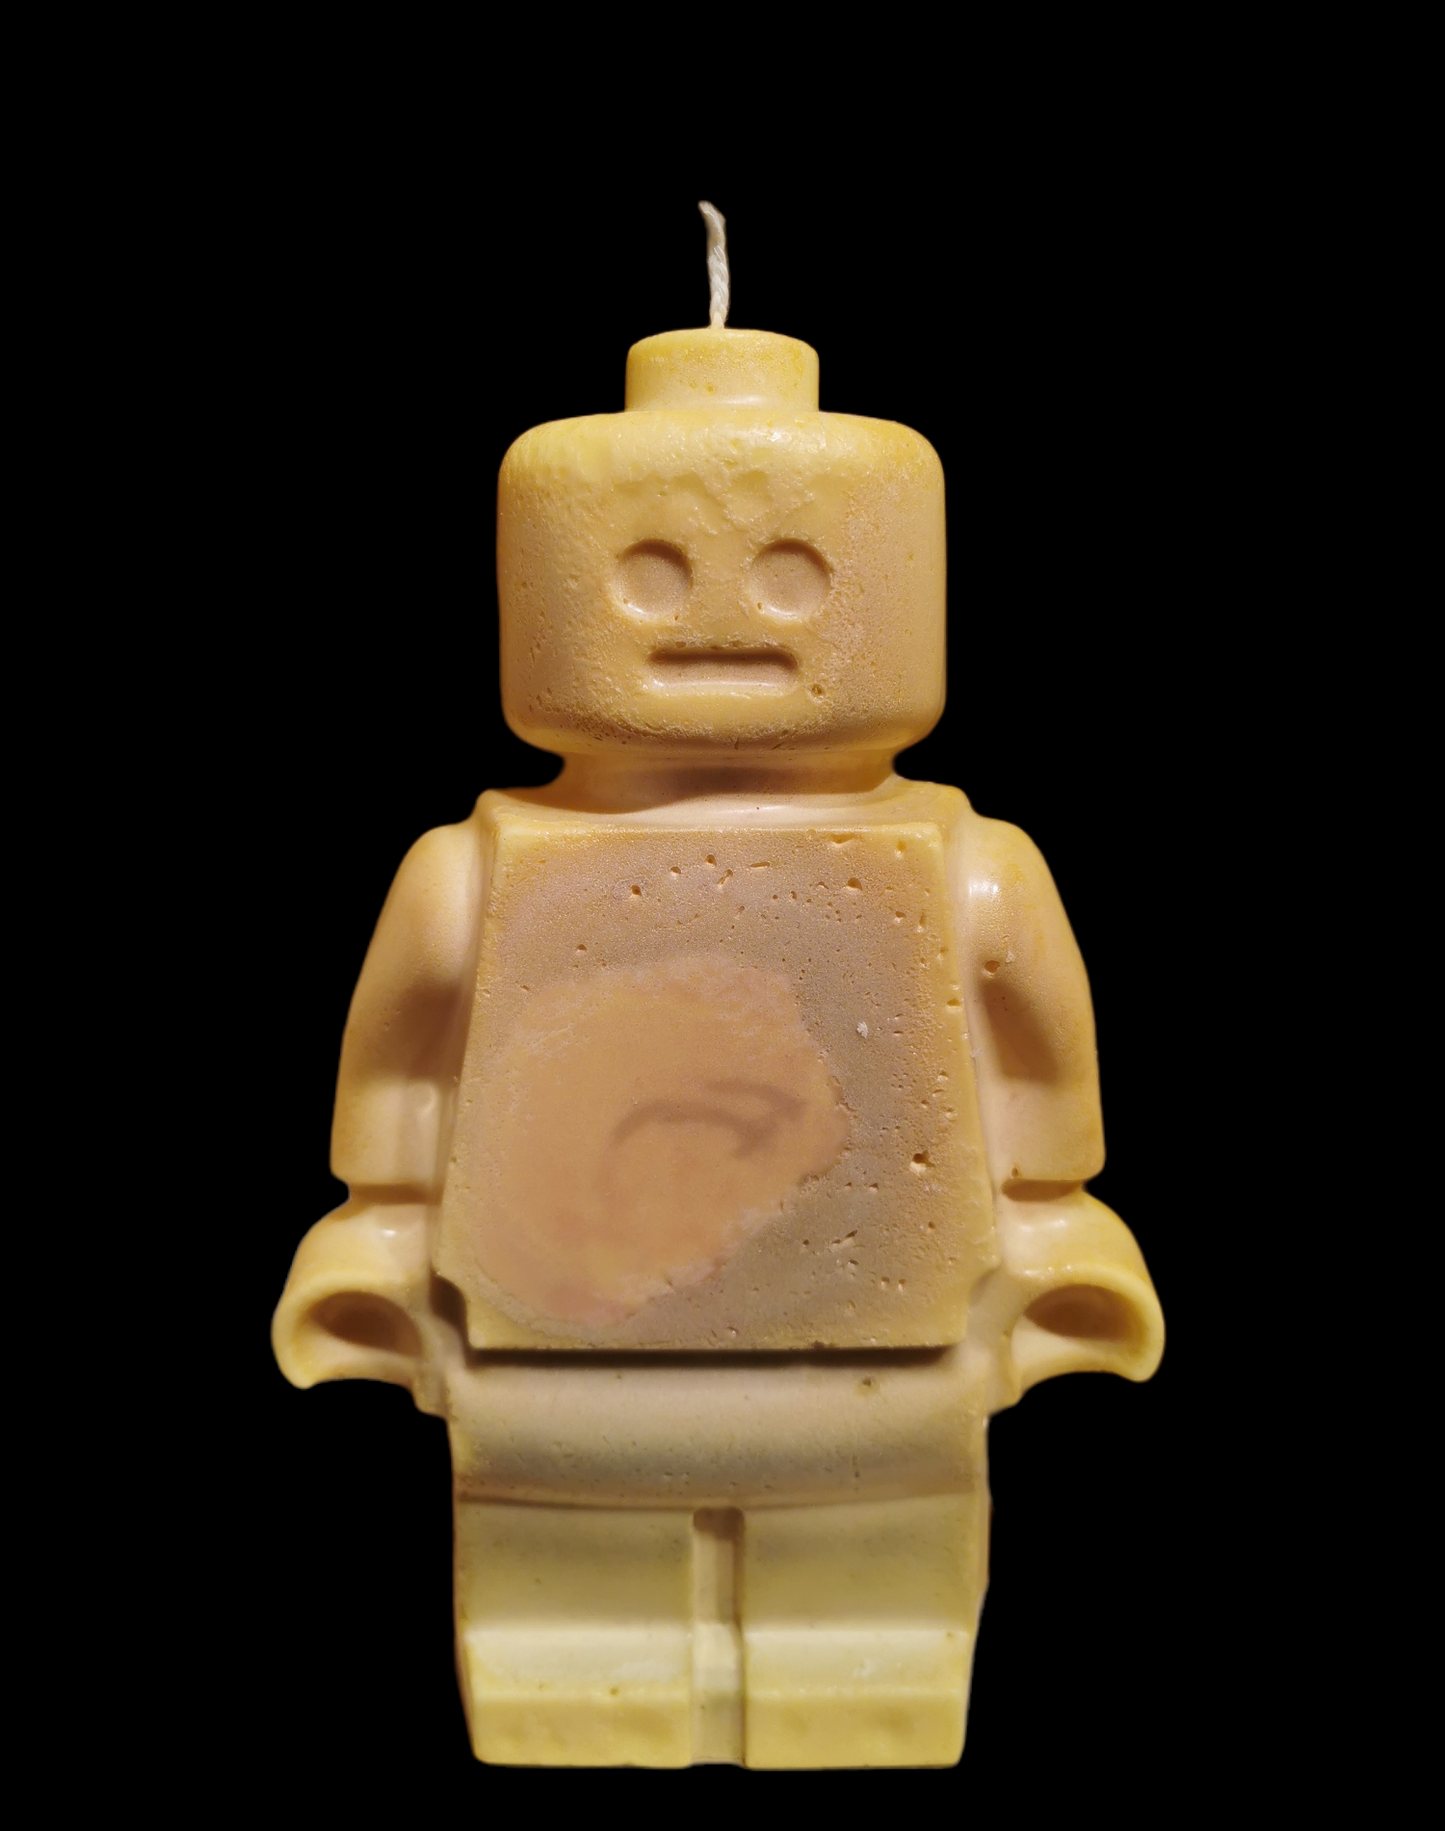 Lego Candle yellow